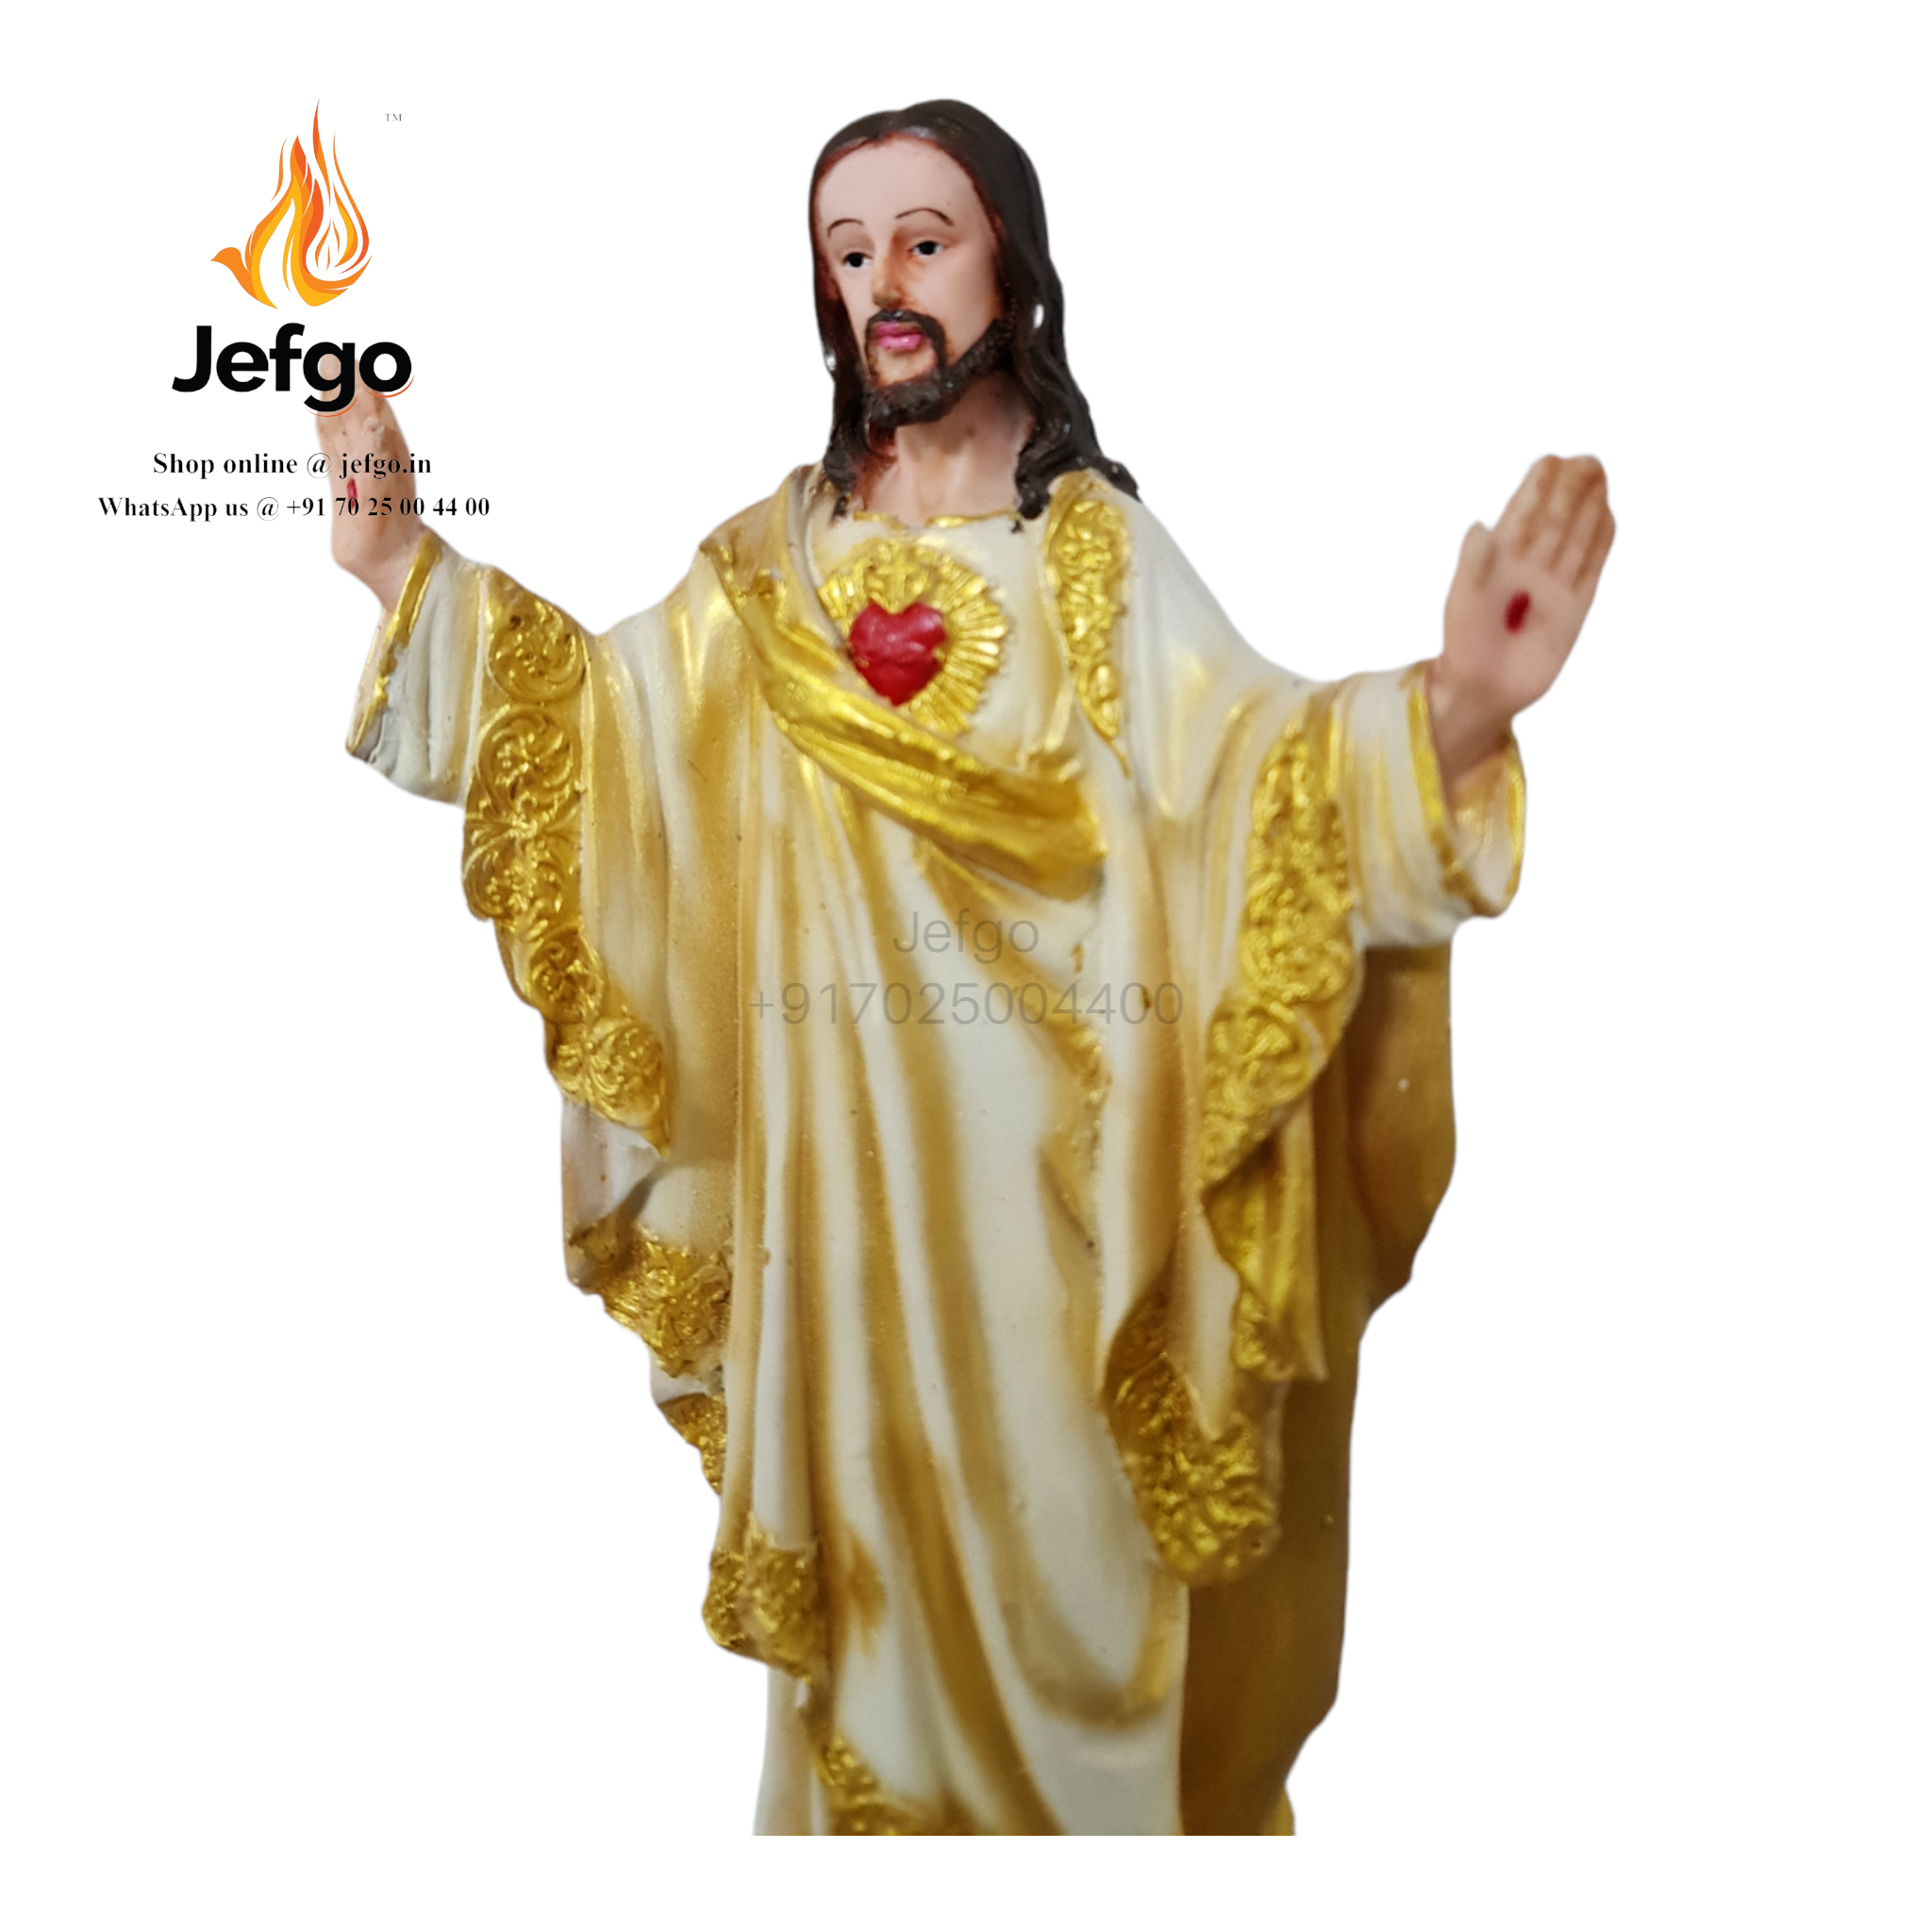 Buy Jesus Statue